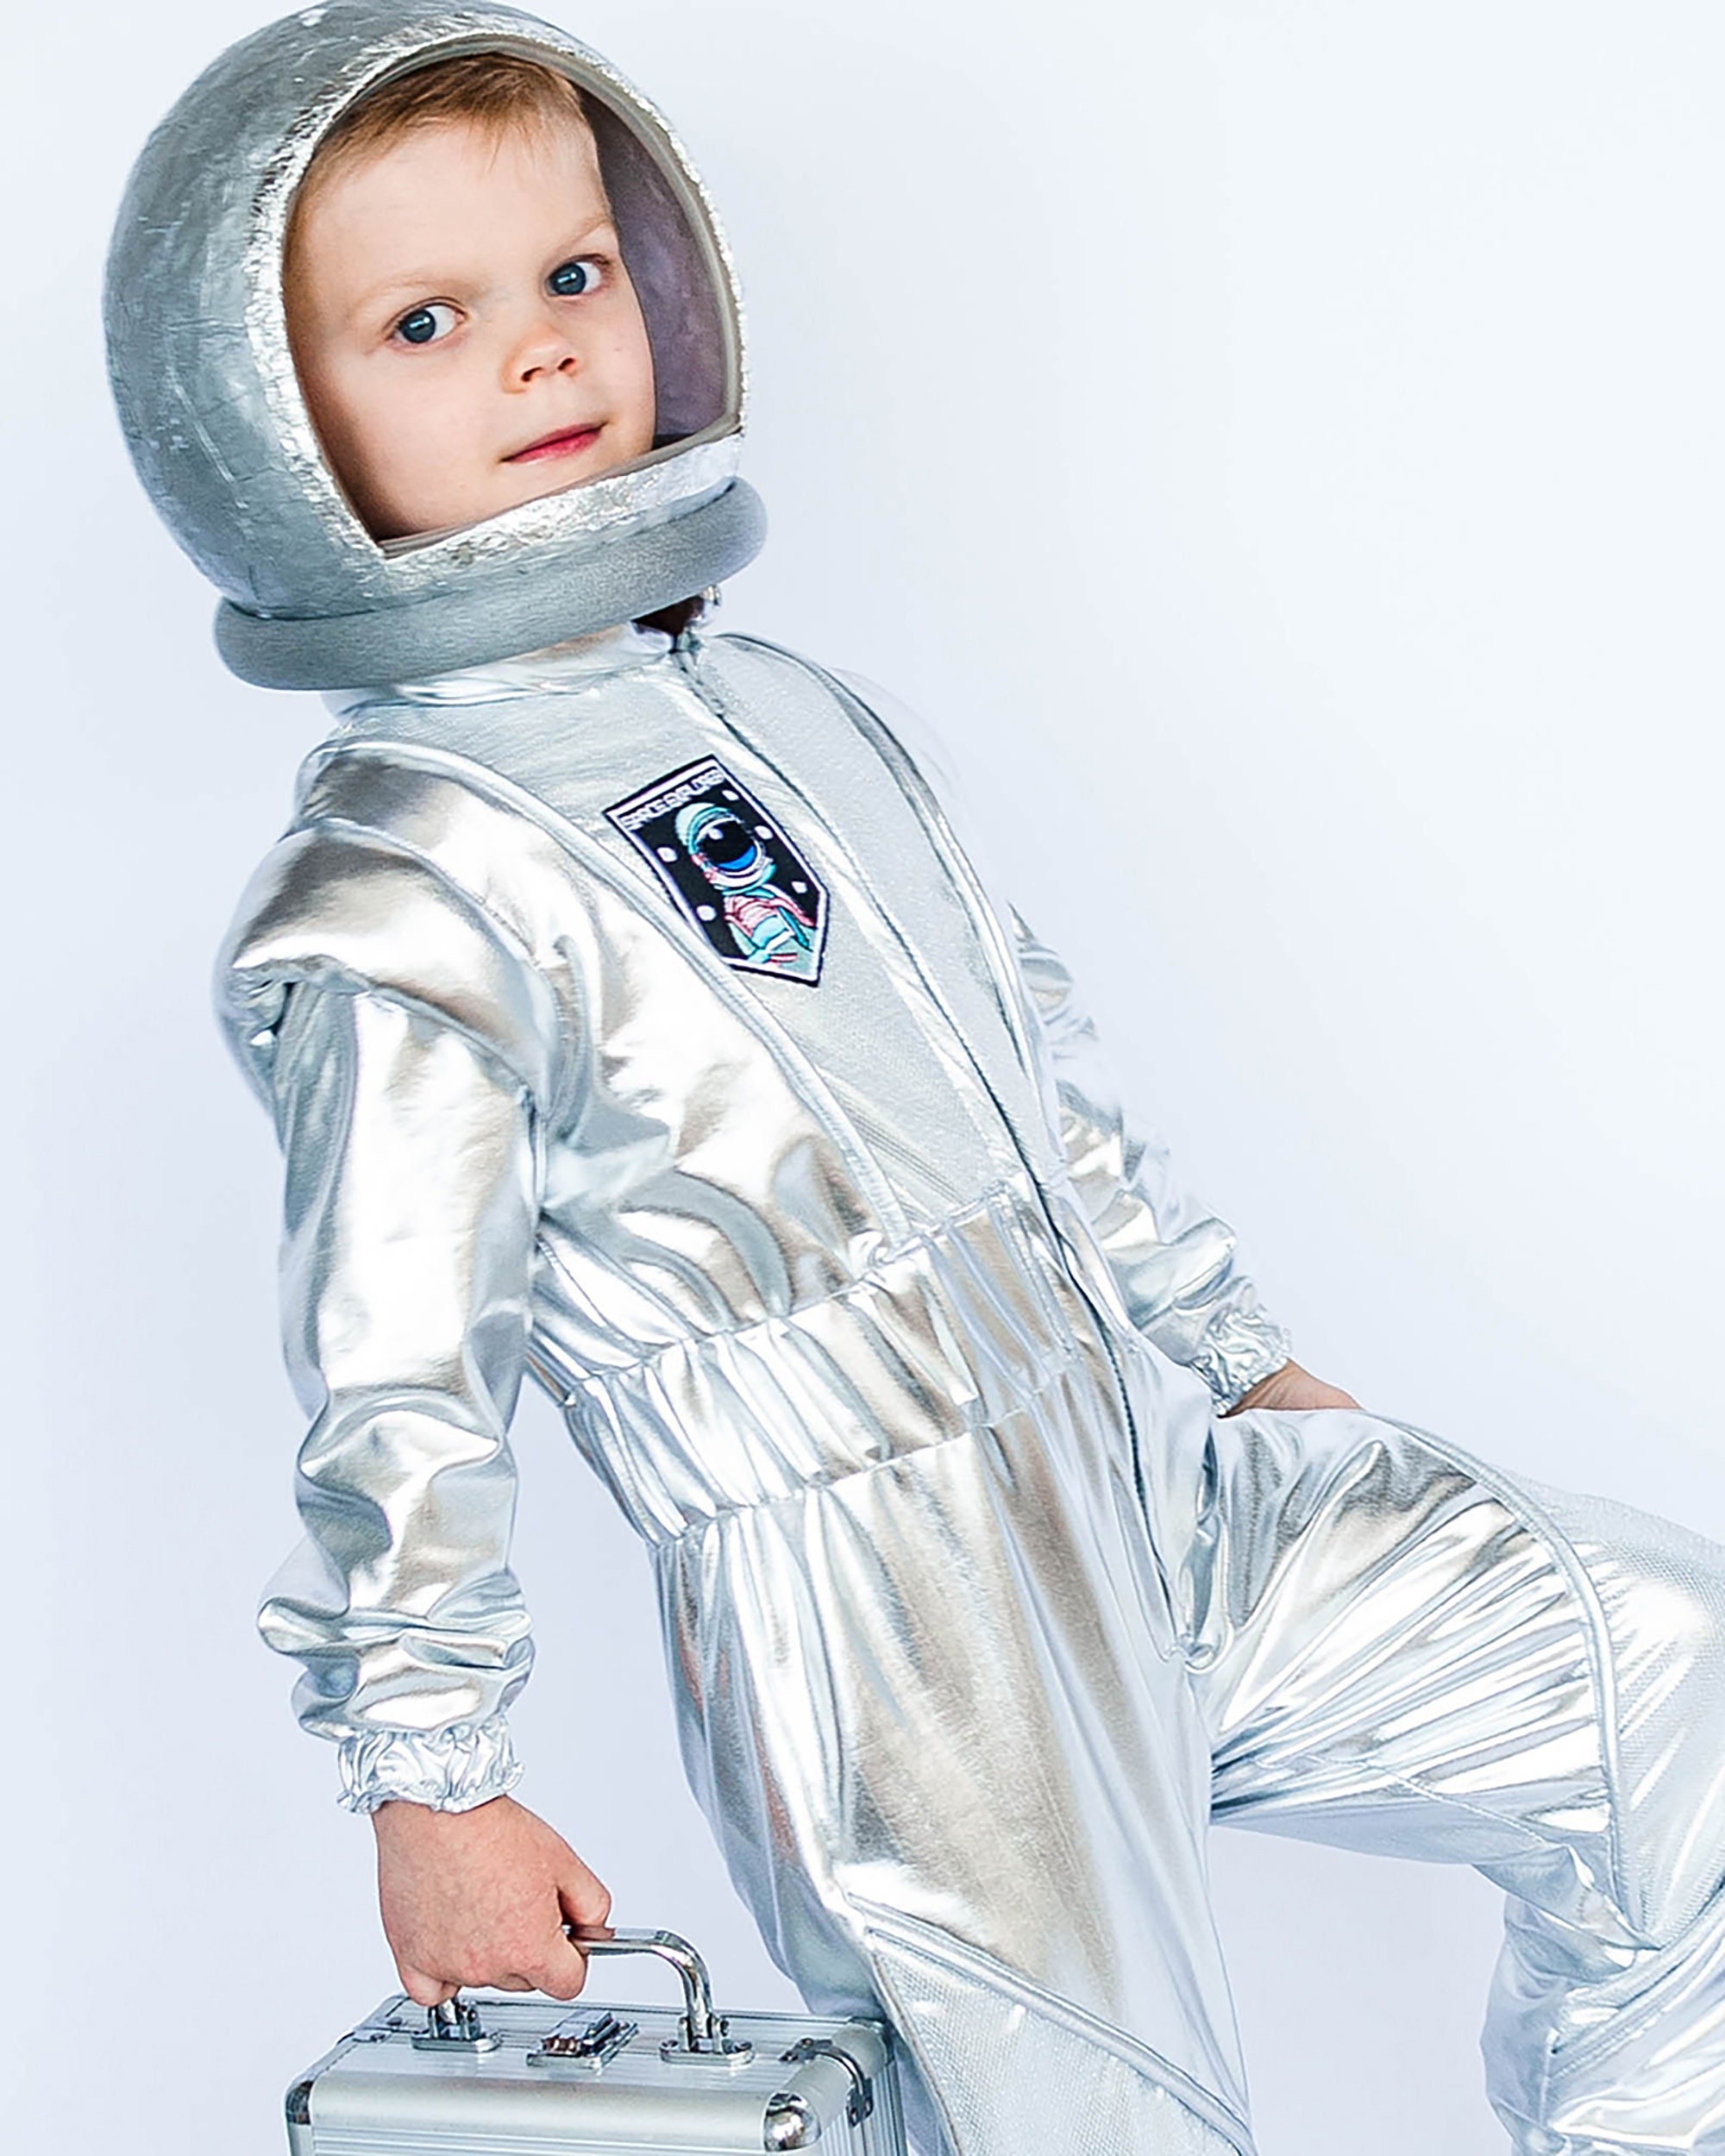 Bambini Astronauta Casco Costume Spazio Giornata Mondiale Del Libro  Cappello